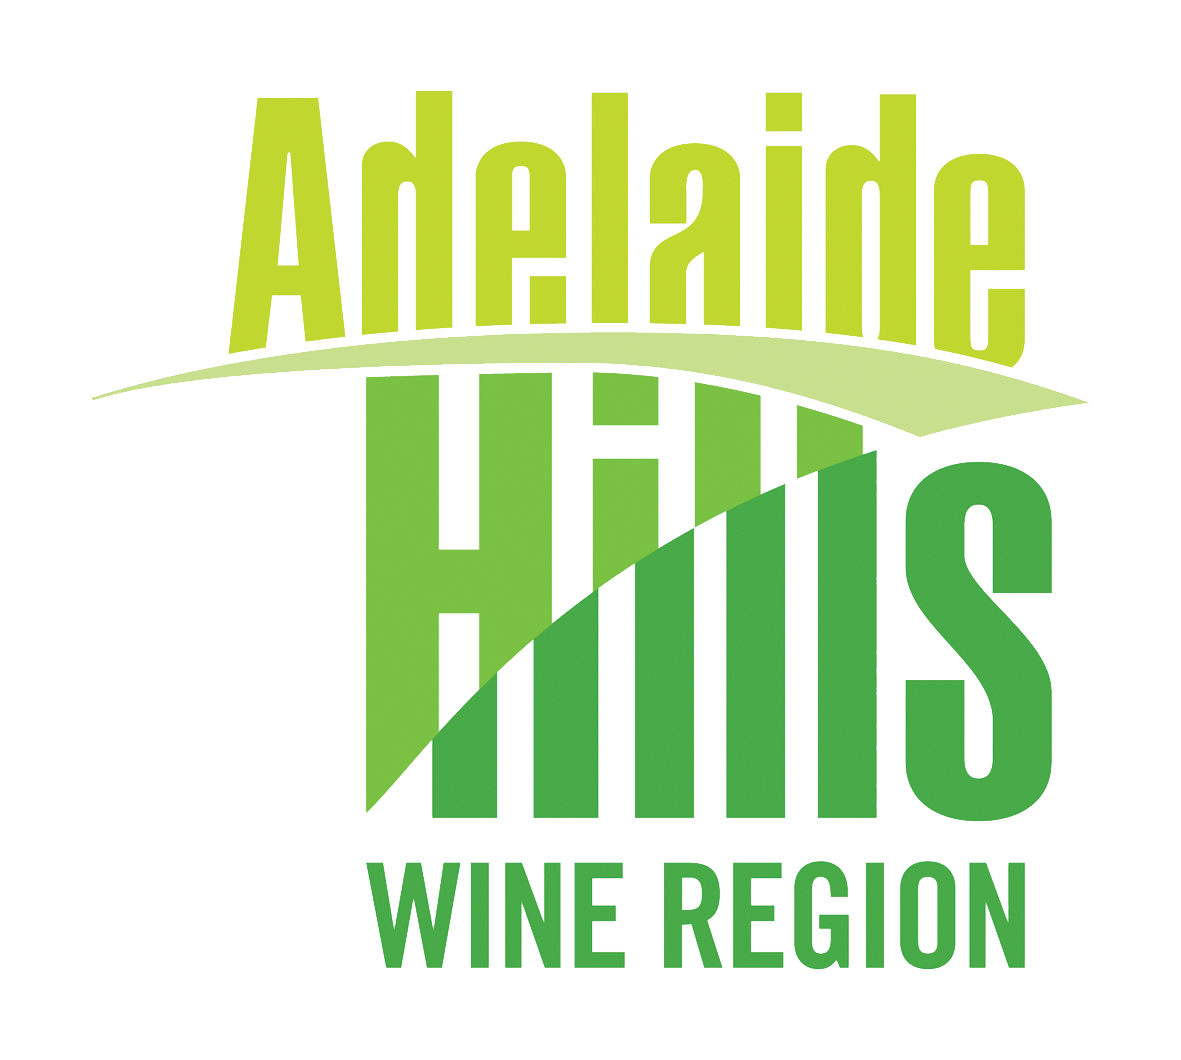 Adelaide Hills Logo PNG - 111880